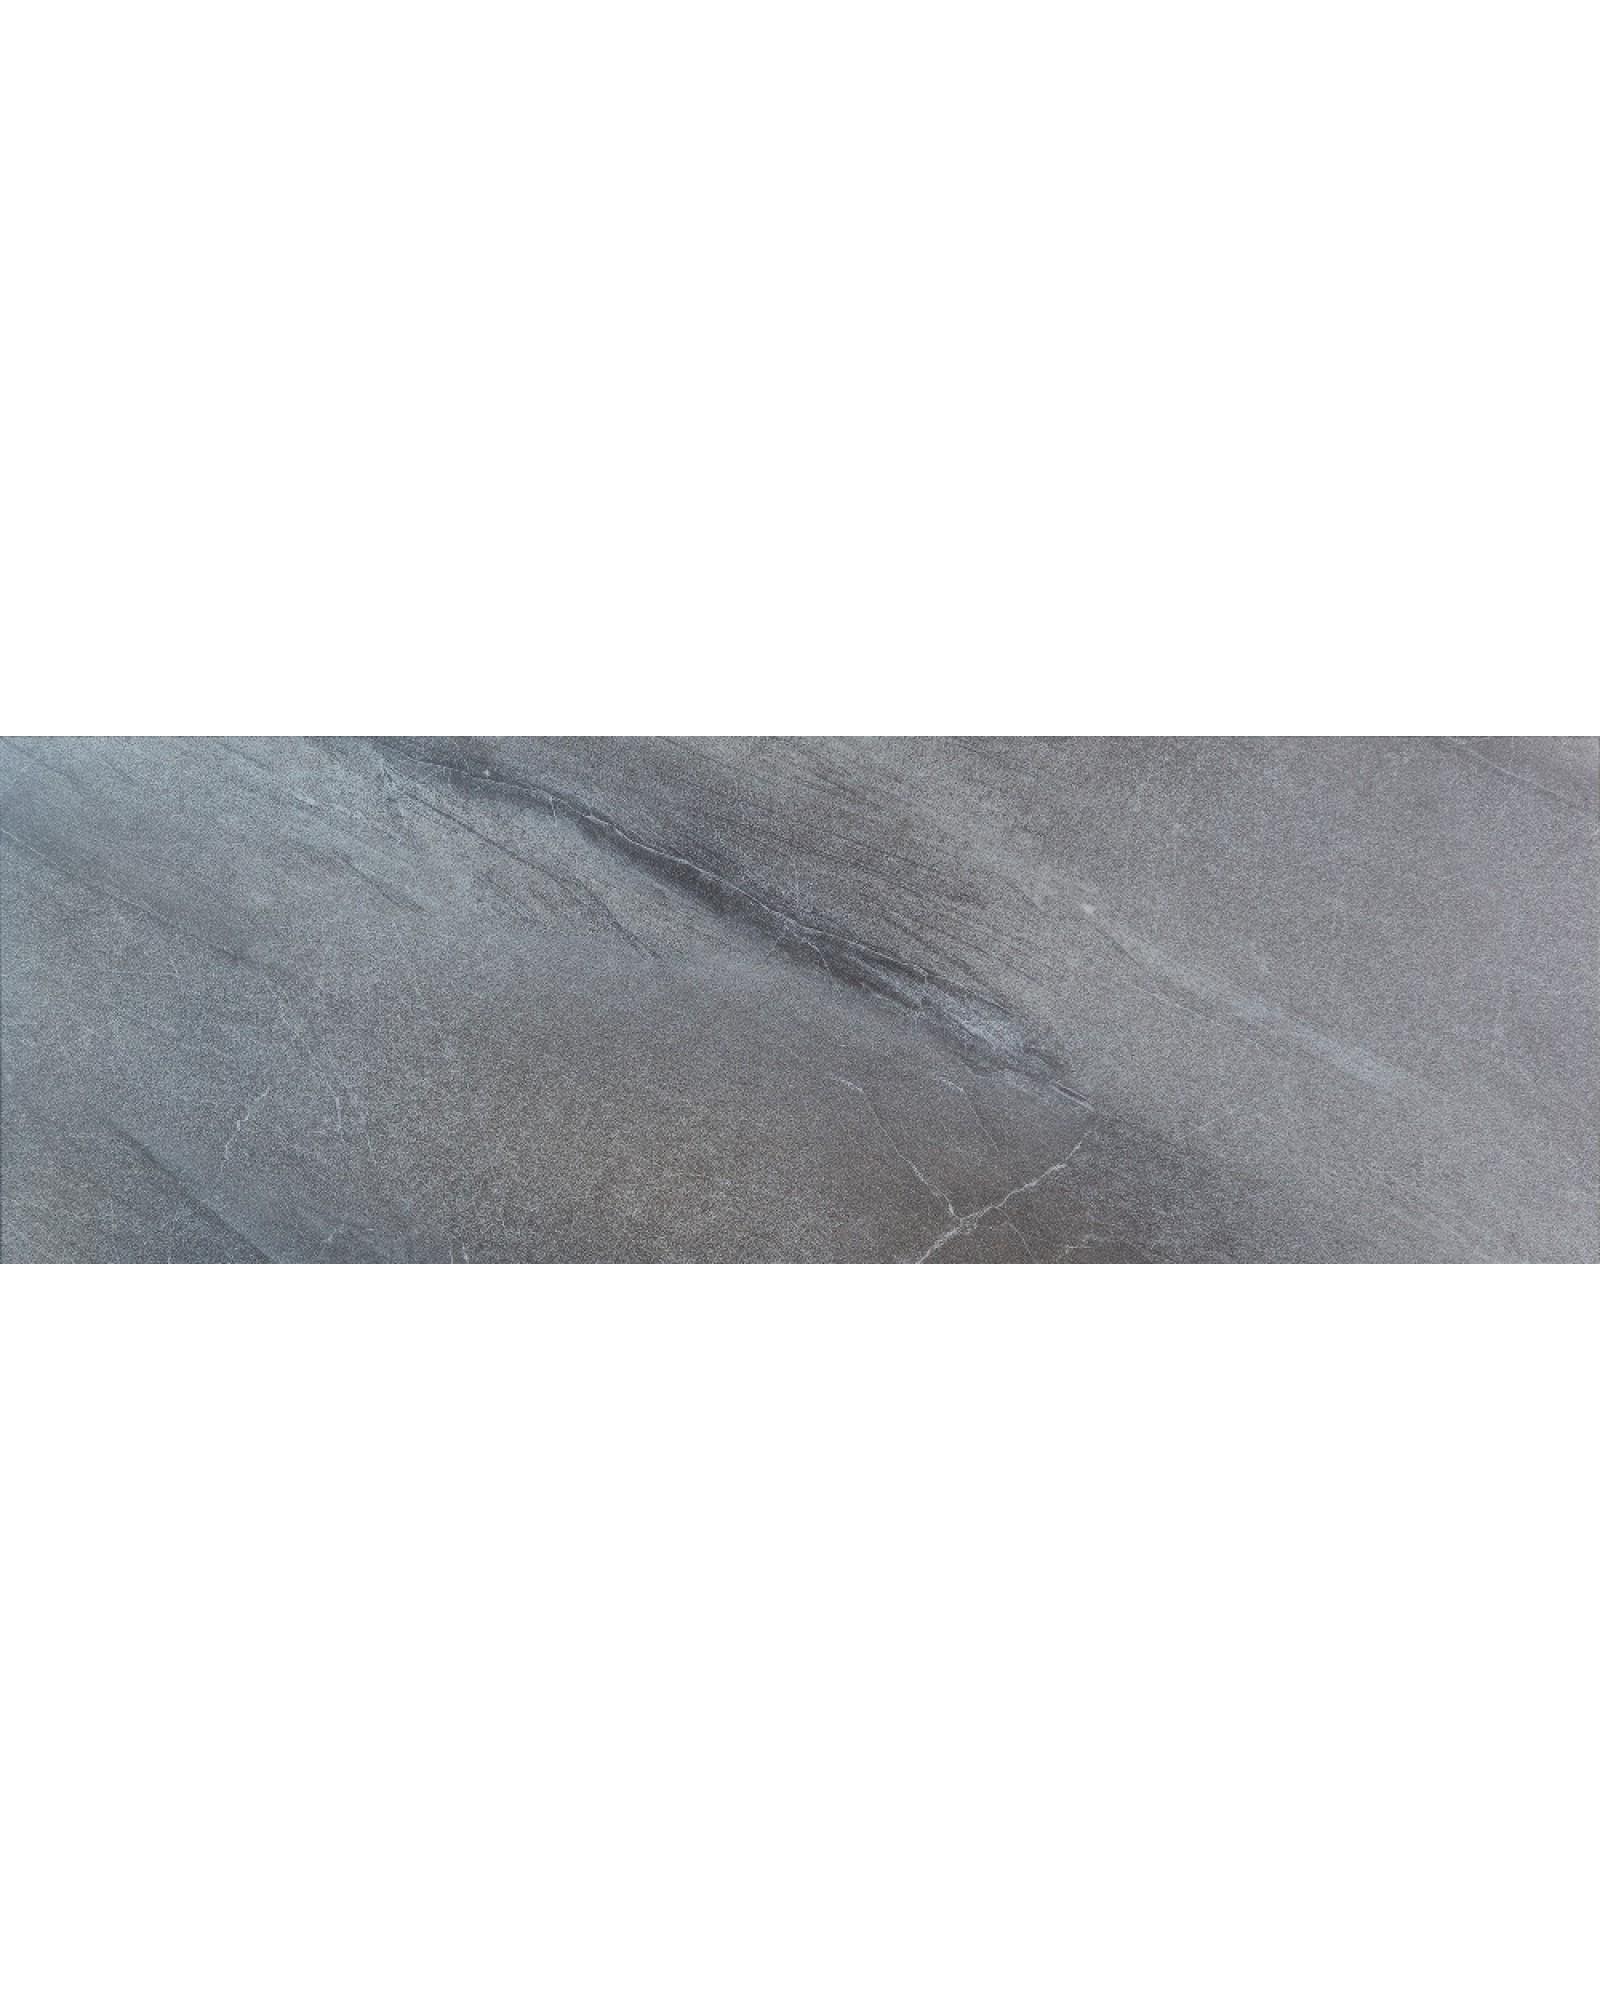 Фото 1 Виниловое напольное покрытие ALLFLOORS Бохум (под плитку) 3 мм (V3-018-21)